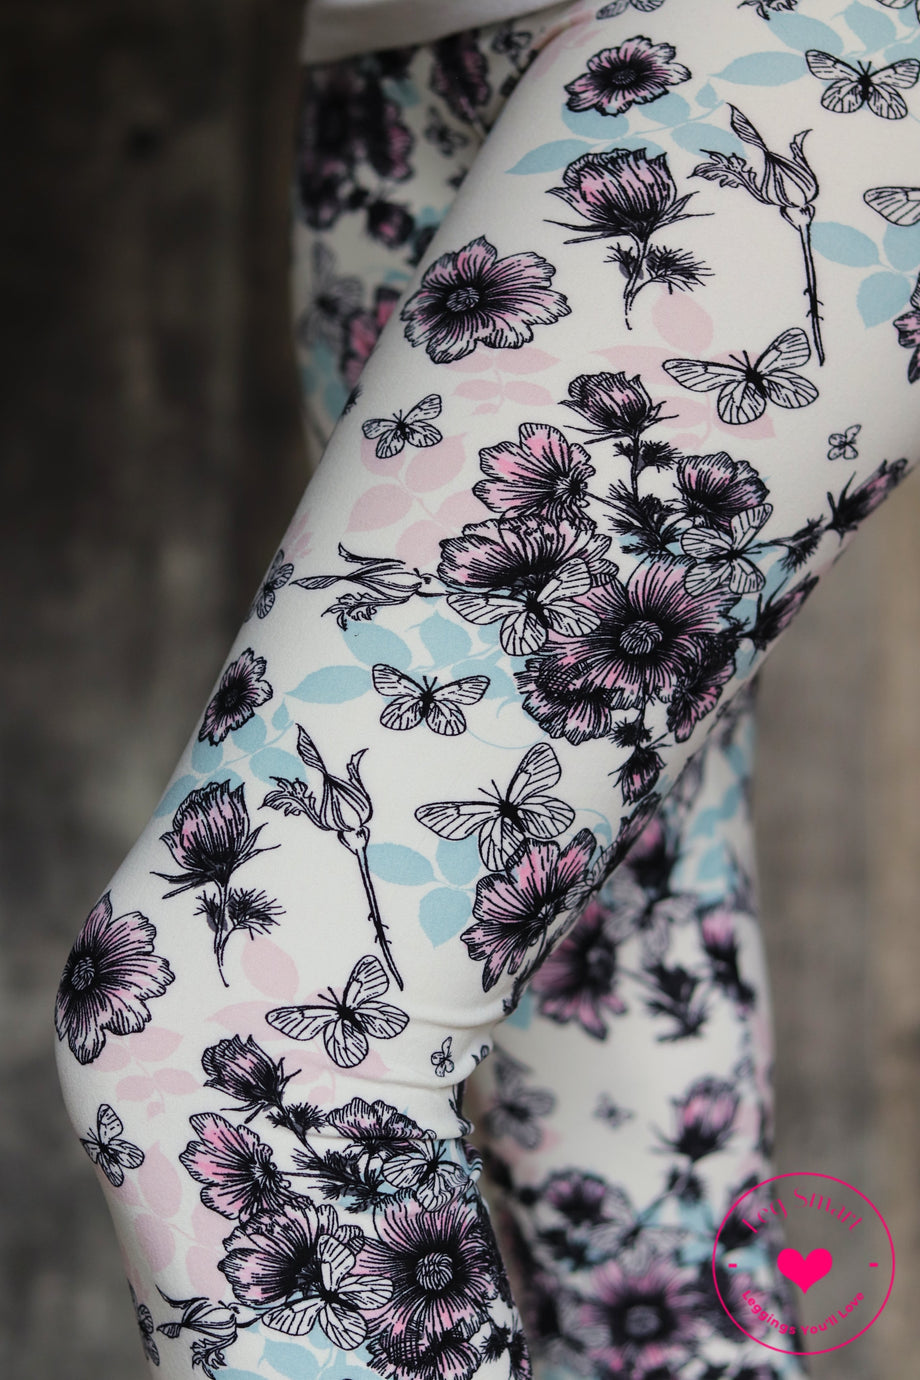 Butterfly Leggings, Flower Printed Pant, Cute Floral Legging